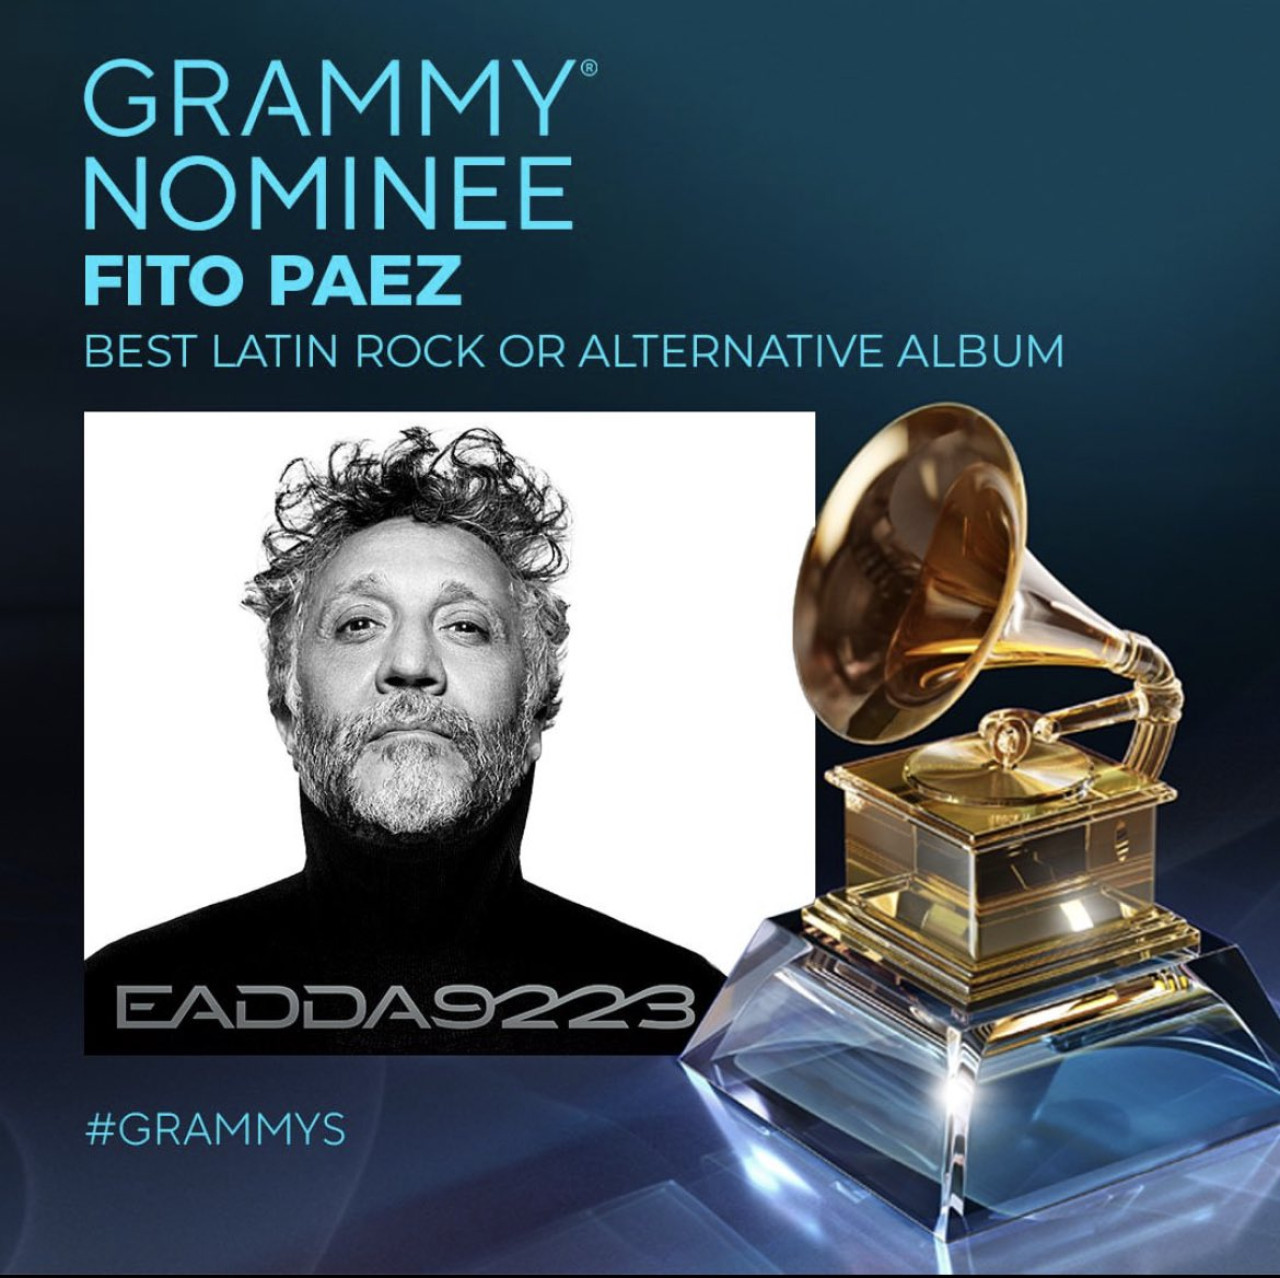 La nominación de Fito Páez a los Premios Grammy. Foto: X @FitoPaezMusica.